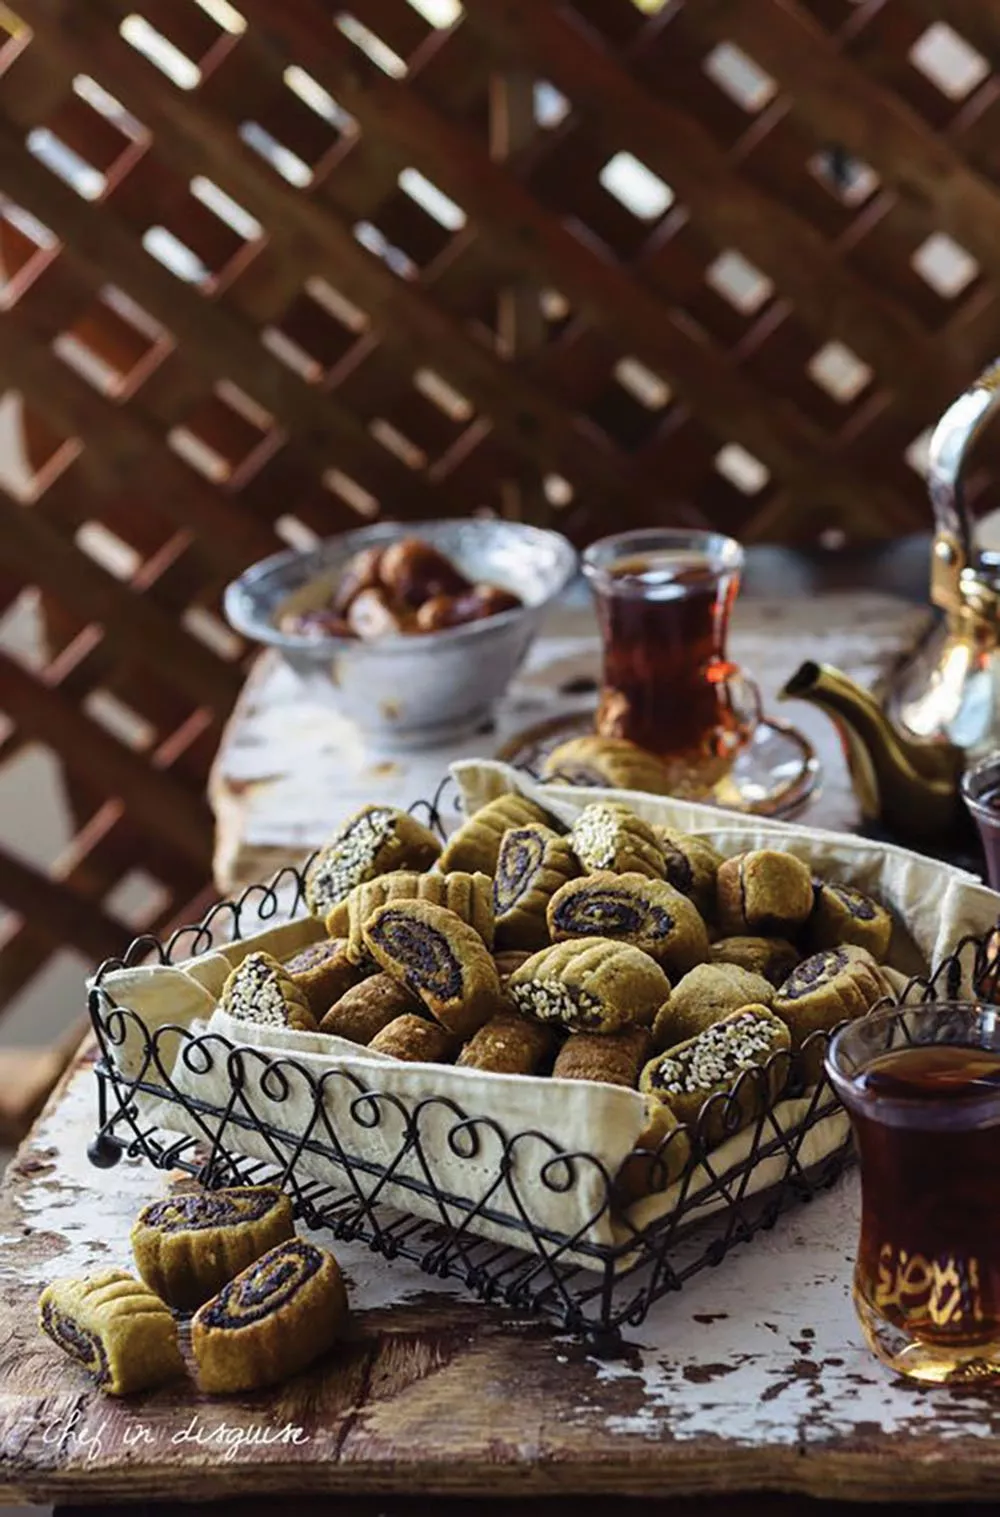 سفرة رمضان 2023: لائحة بآخر صيحات الطعام الرائجة والتي يجب أن تكون على مائدتكِ